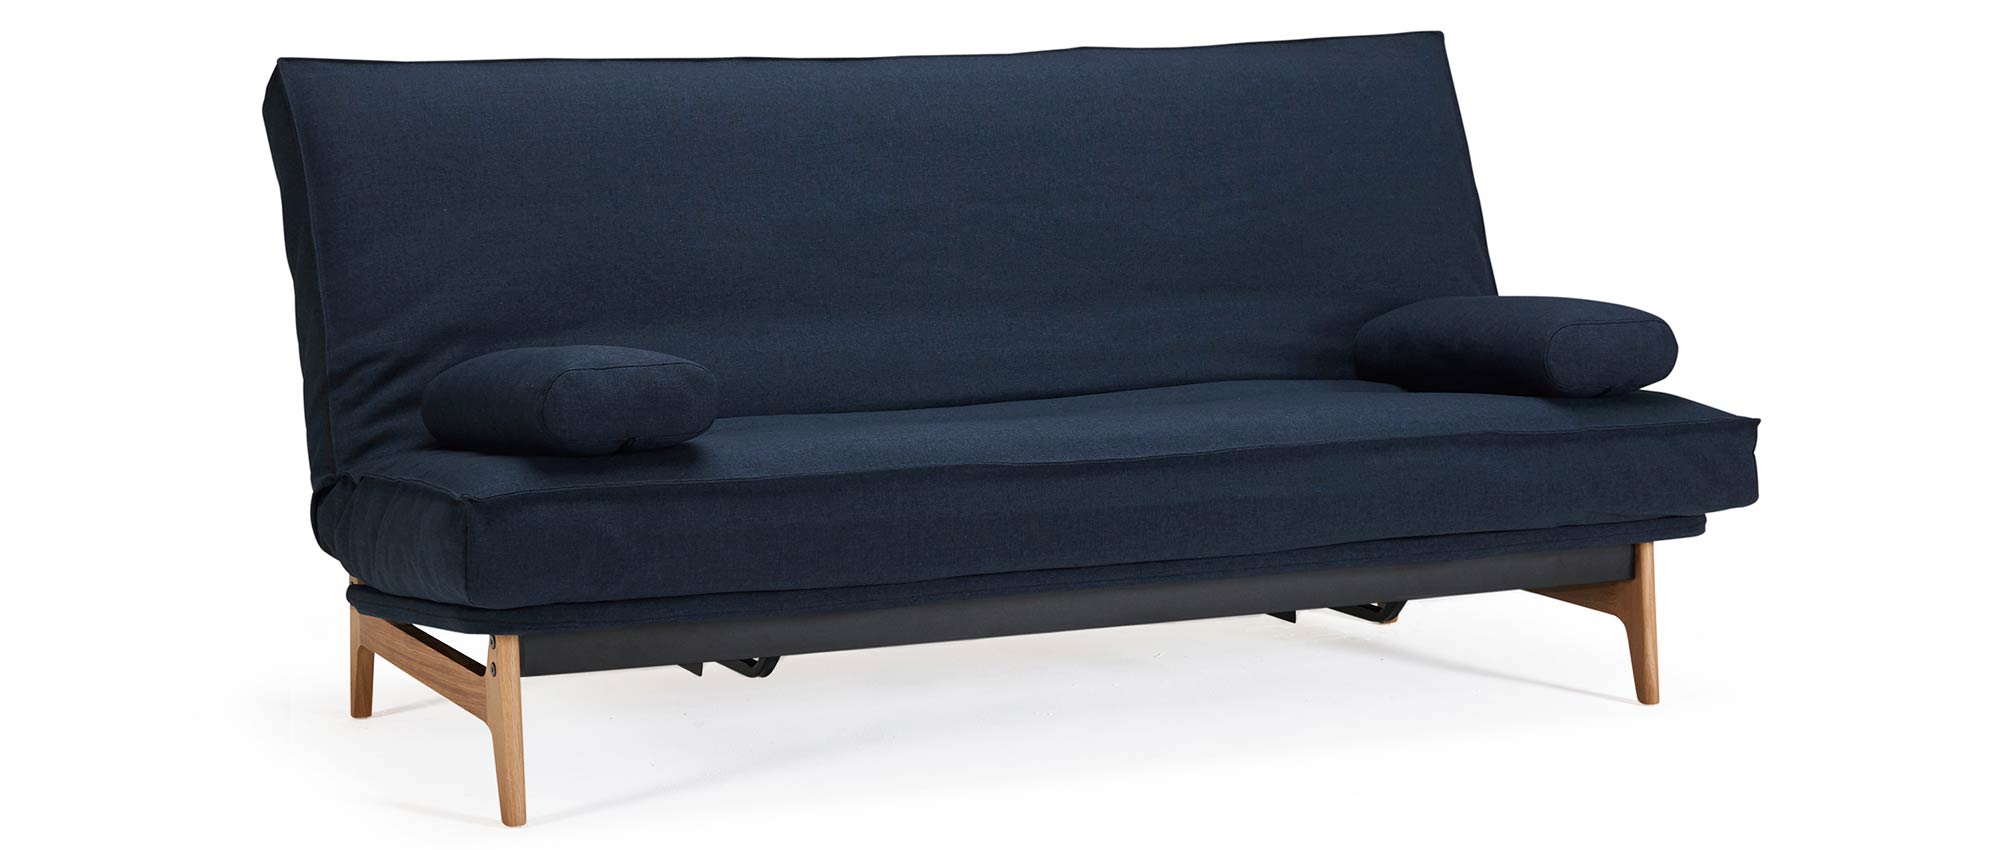 blaues Schlafsofa ASLAK von Innovation mit Holzfüßen, Sofabett für jeden Tag - Liegefläche 140x200 cm oder 120x200 cm